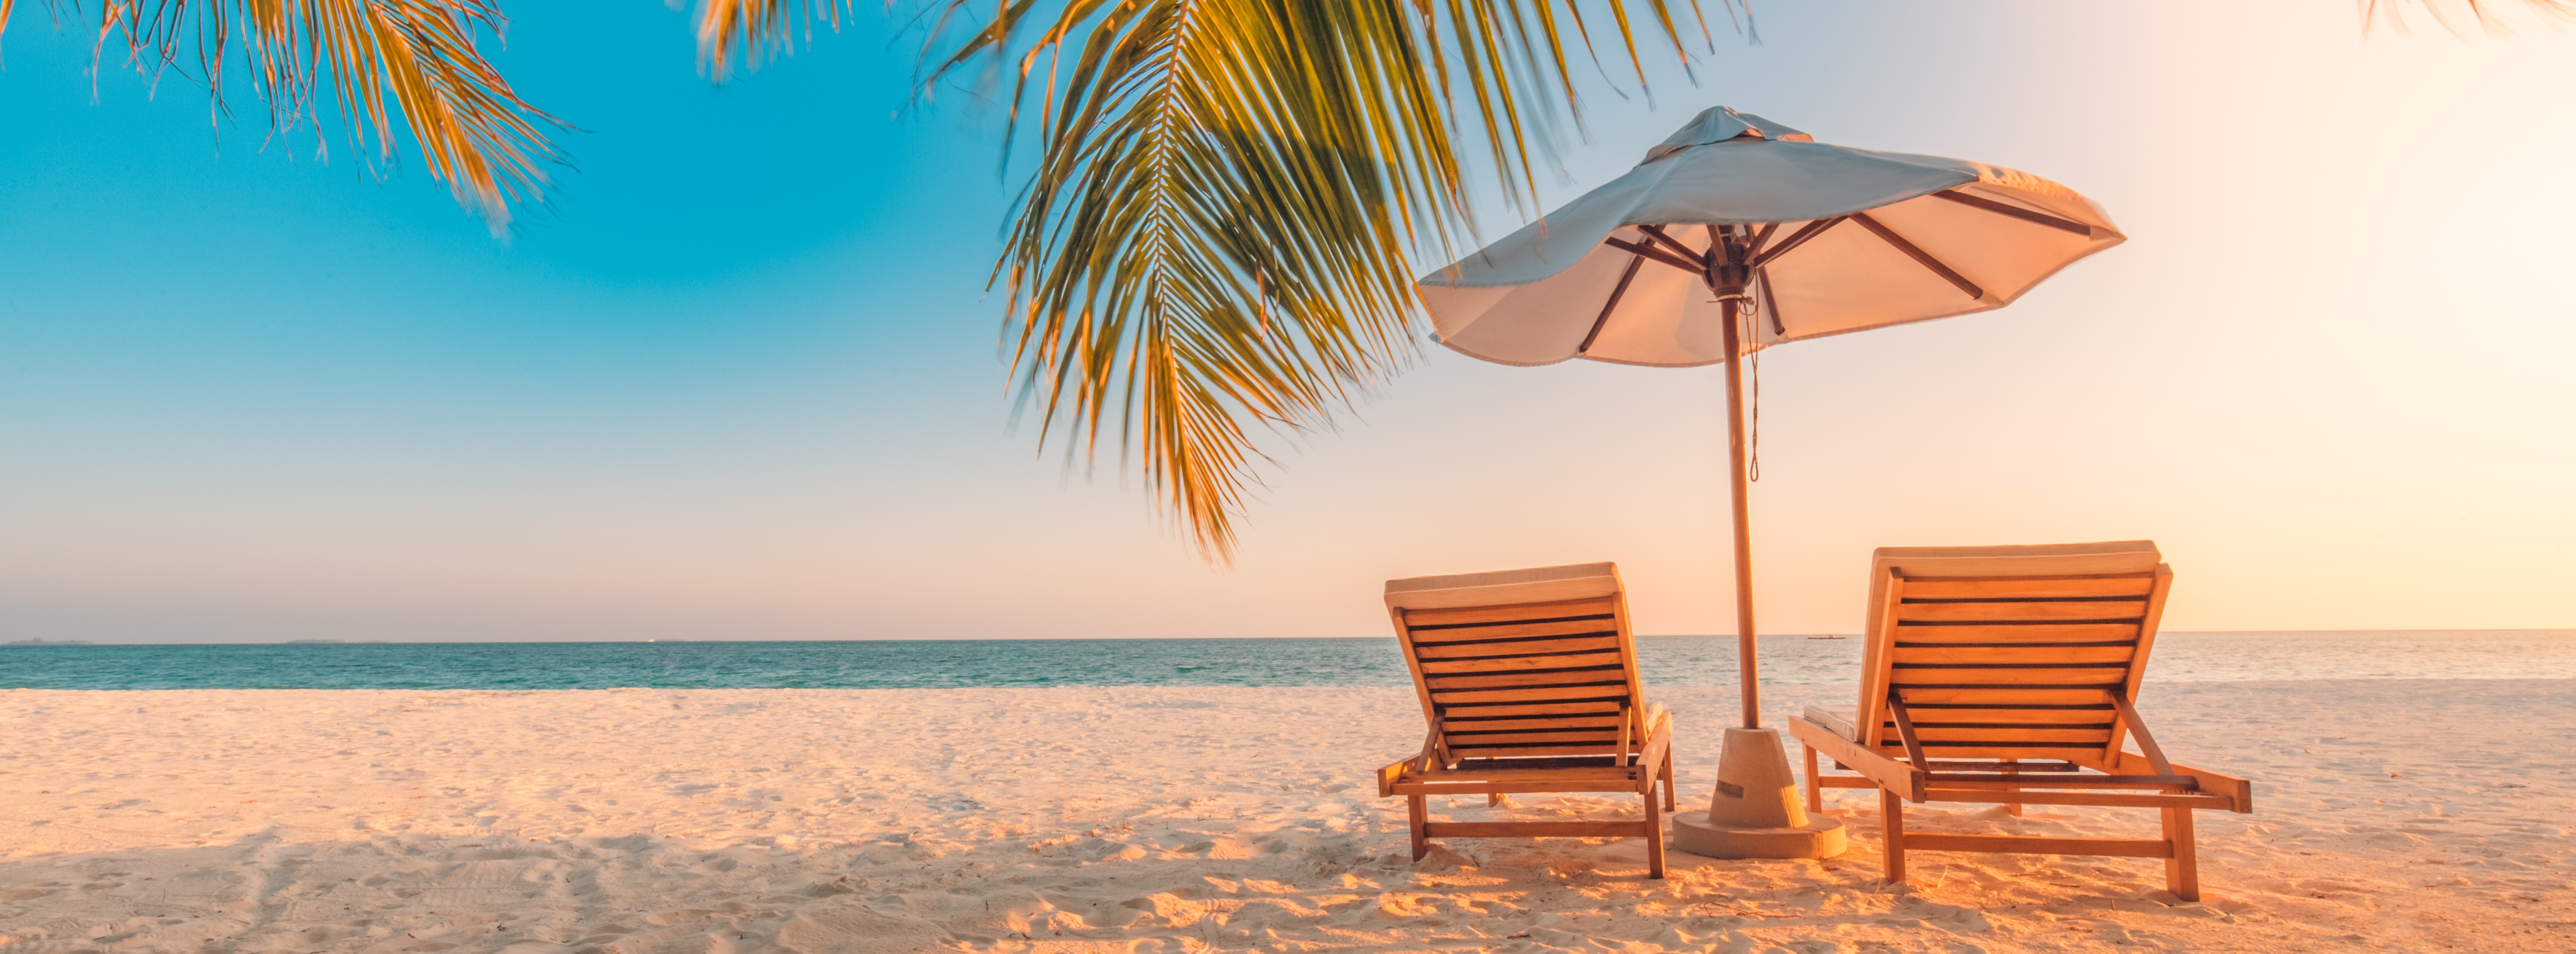 caribbean-strand-strandstoelen